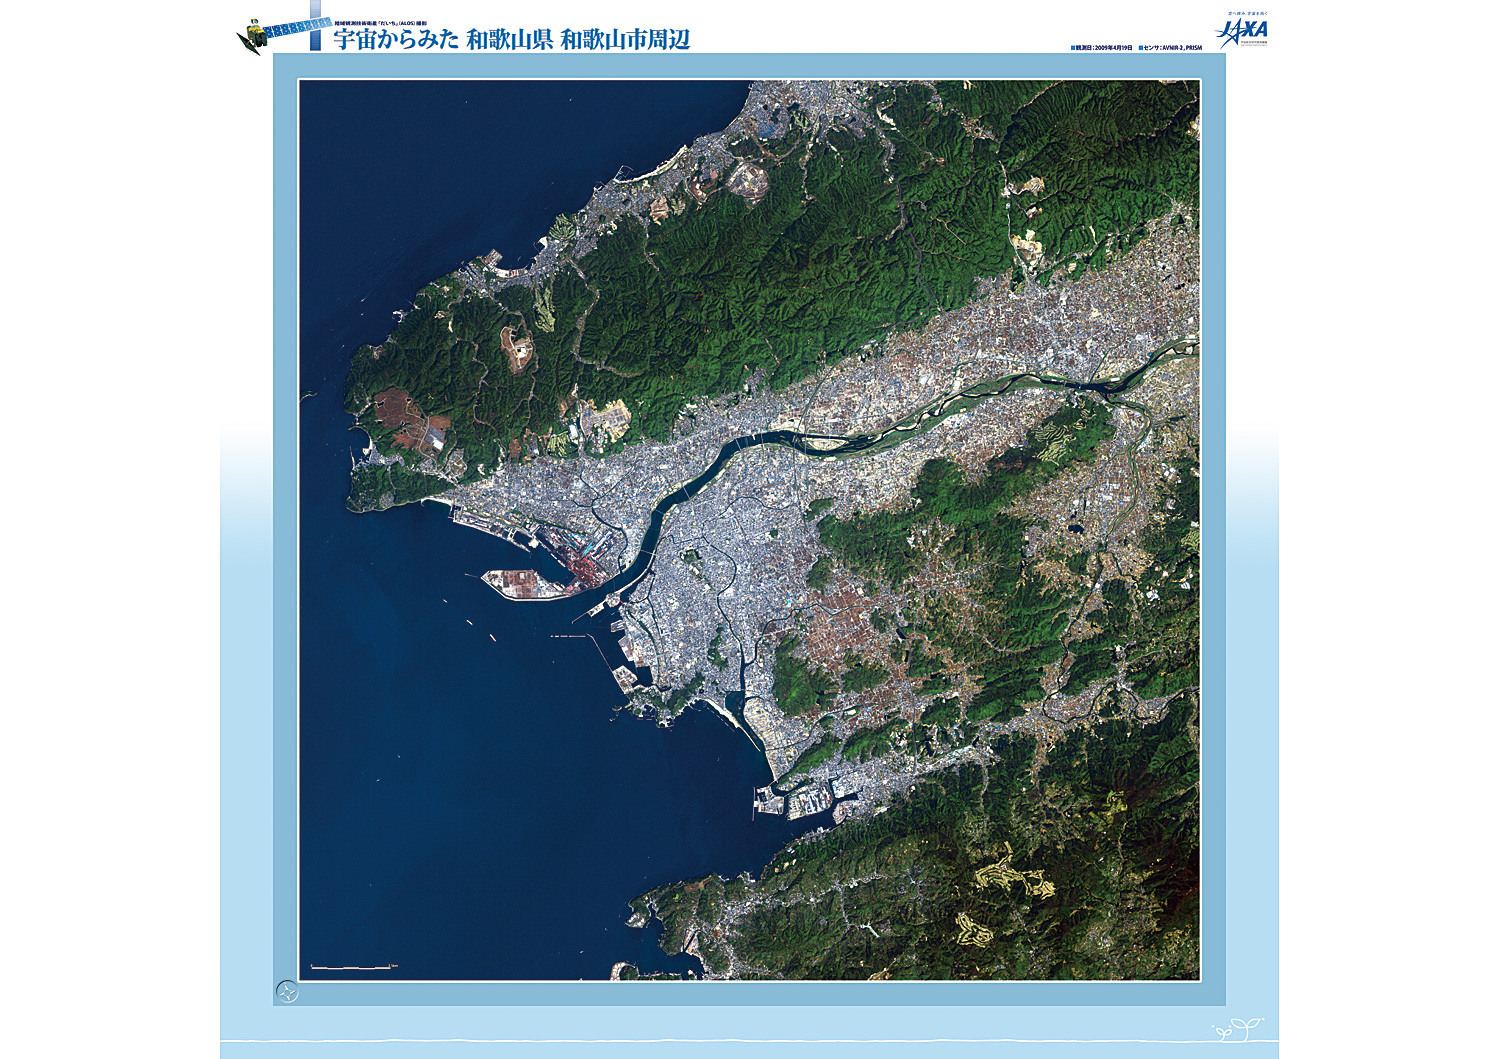 だいちから見た日本の都市 和歌山市:衛星画像（ポスター仕上げ）